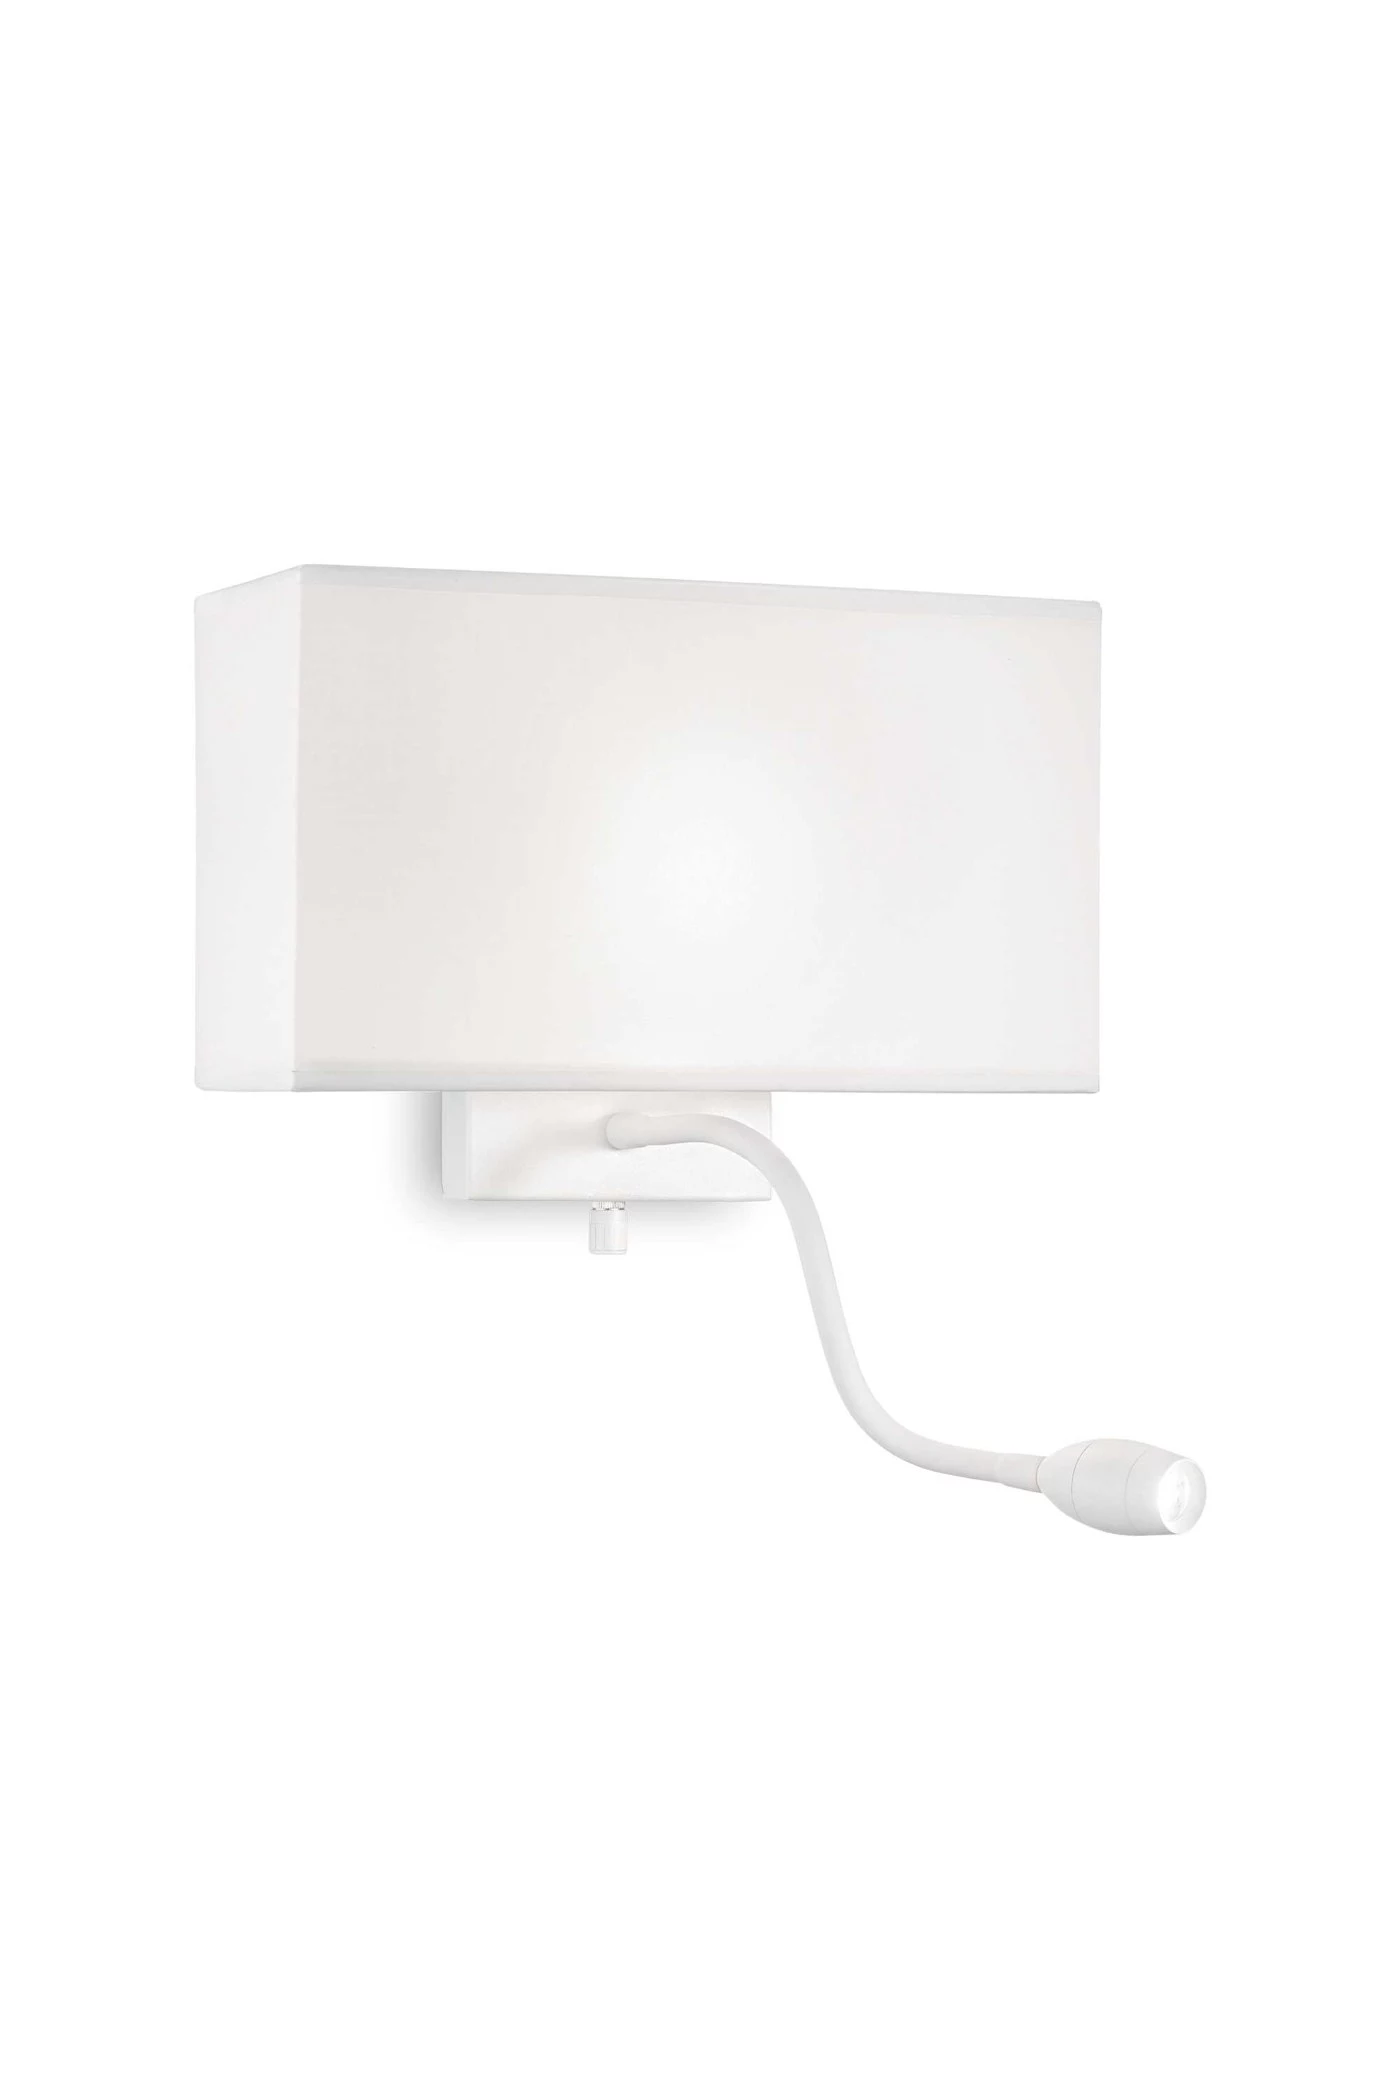   
                        Світильник настінний IDEAL LUX (Італія) 46018    
                        .  
                        Тип джерела світла: cвітлодіодні led, енергозберігаючі, розжарювання, вбудовані світлодіоди led.                                                 Кольори плафонів і підвісок: білий.                         Матеріал: тканина.                          фото 1